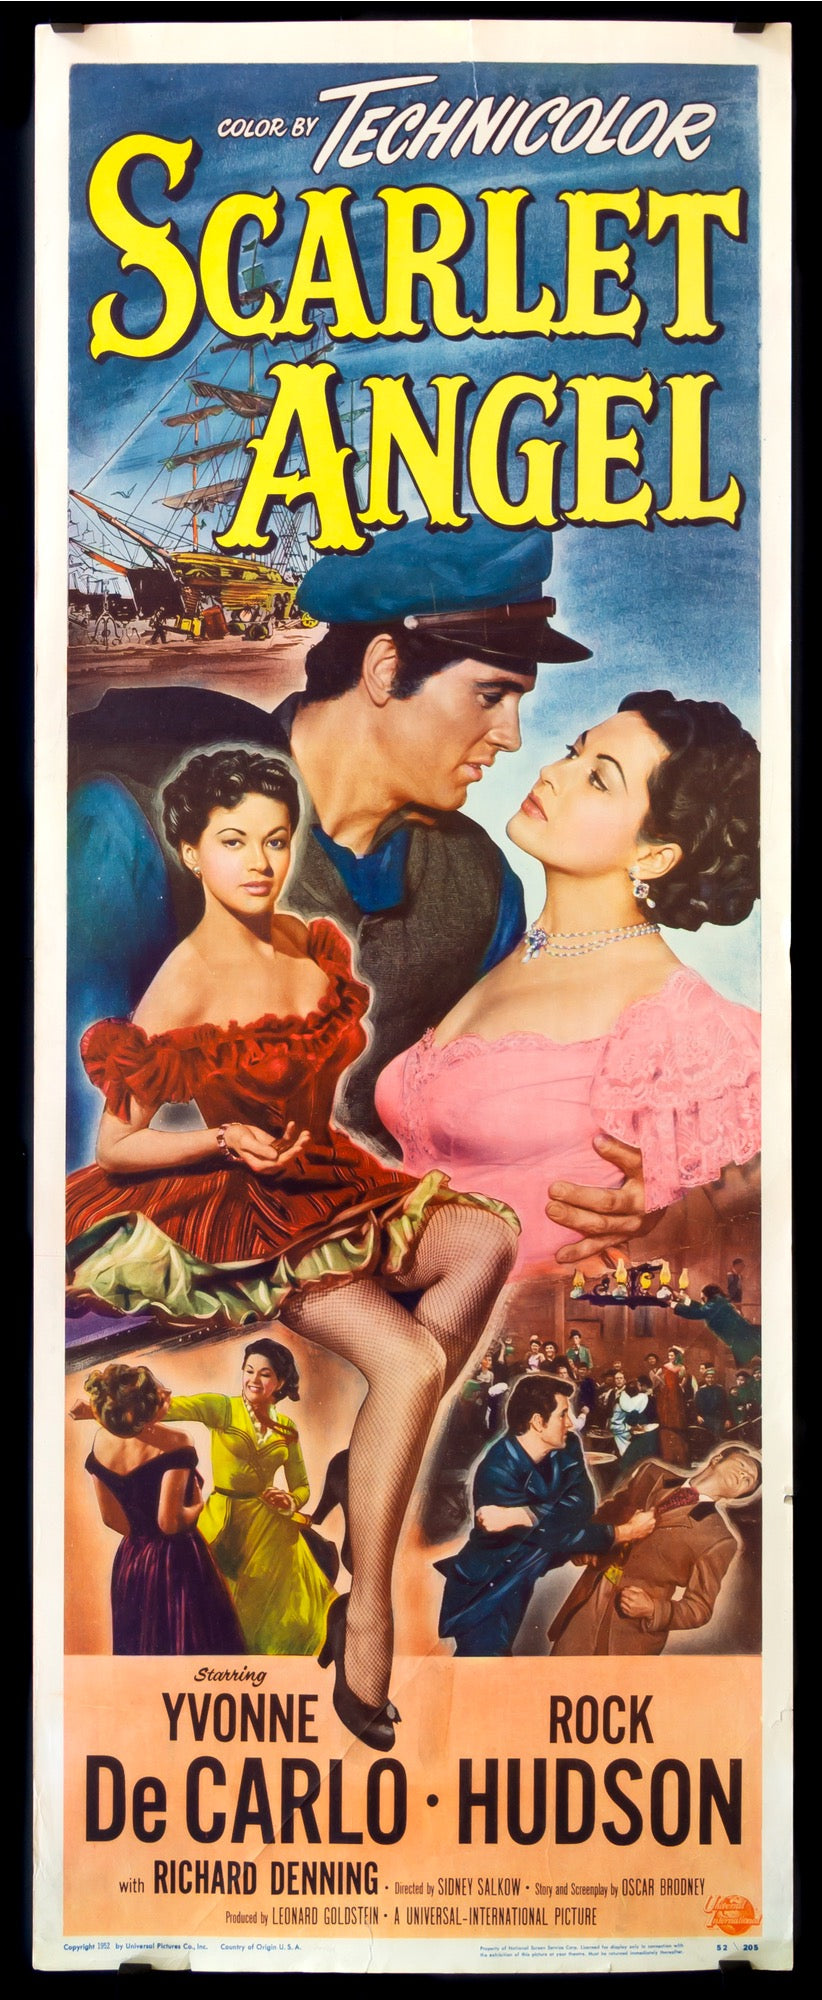 Scarlet Angel (1952) original movie poster for sale at Original Film Art